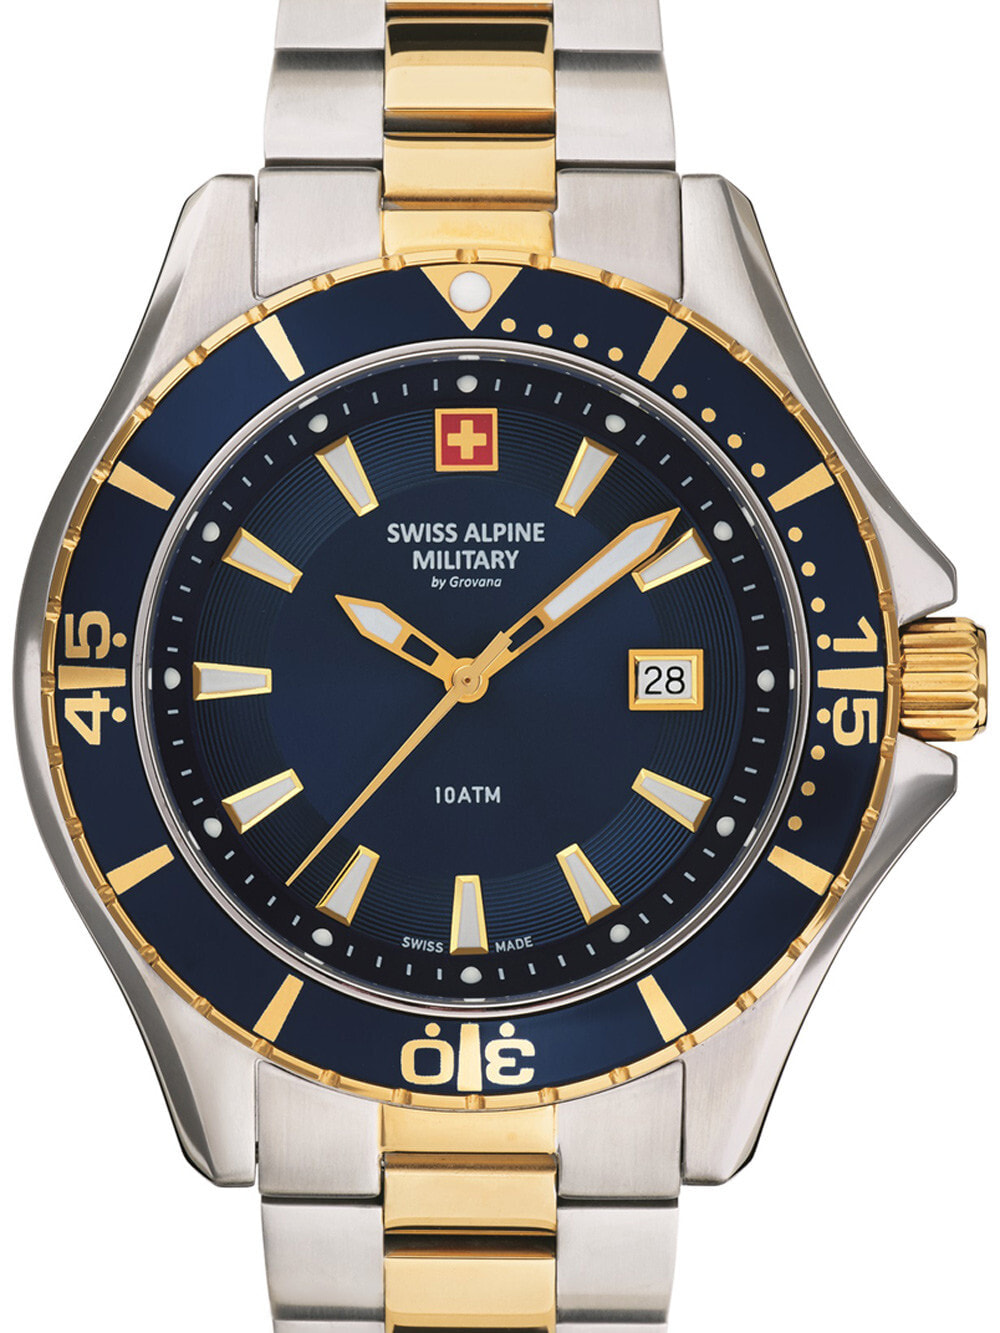 Мужские наручные часы с серебряным золотым браслетом Swiss Alpine Military 7040.1145 diver 45mm 10ATM